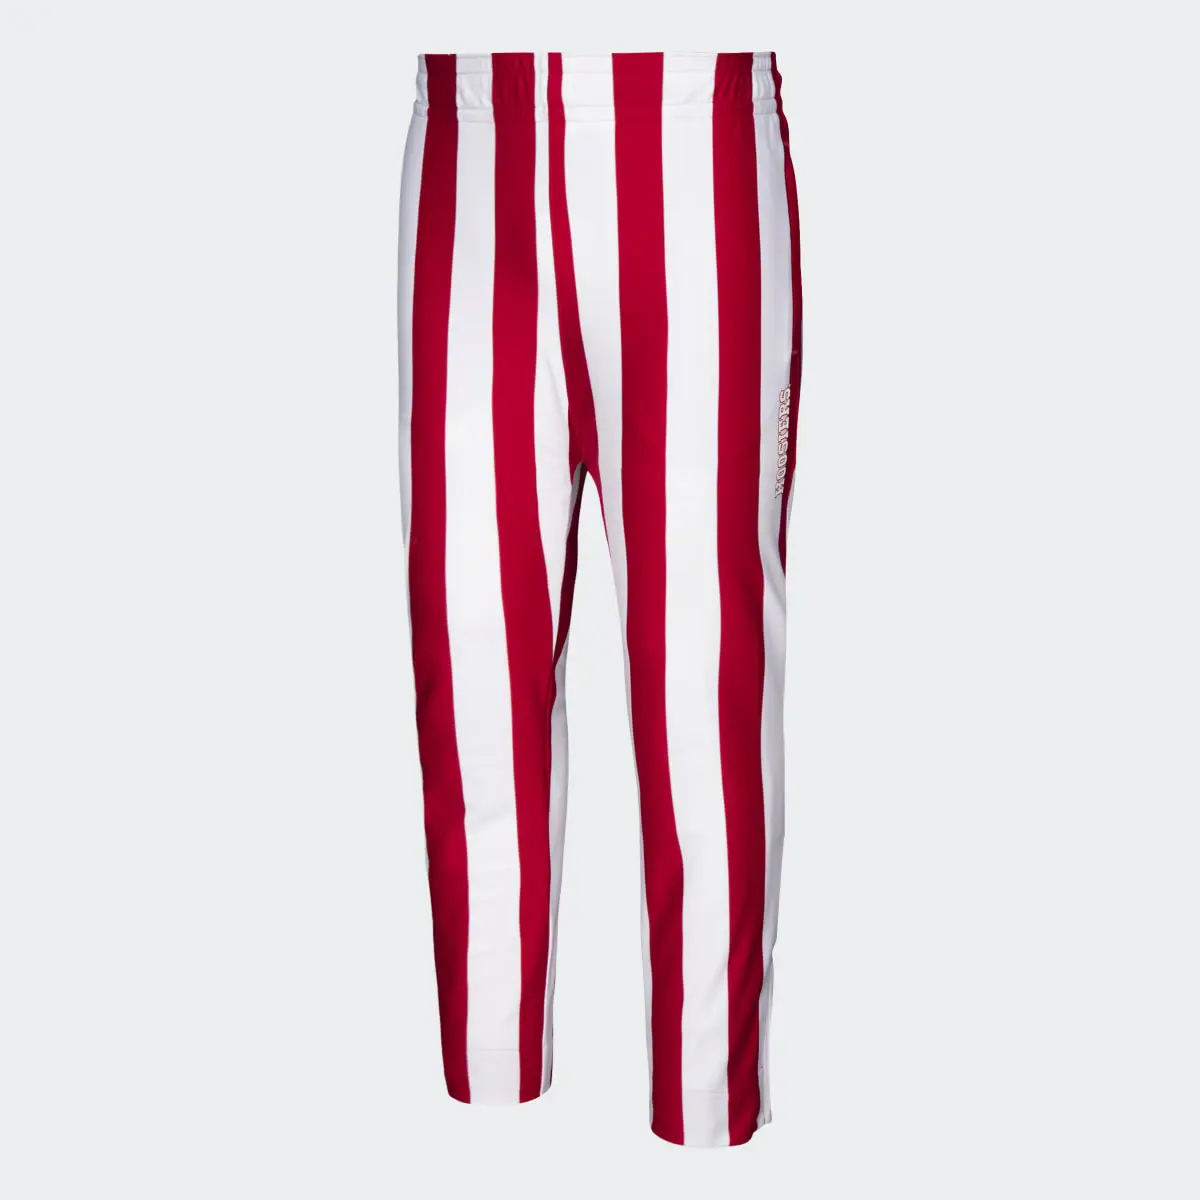 Adidas Hoosiers Candy-Stripe Pants. 1